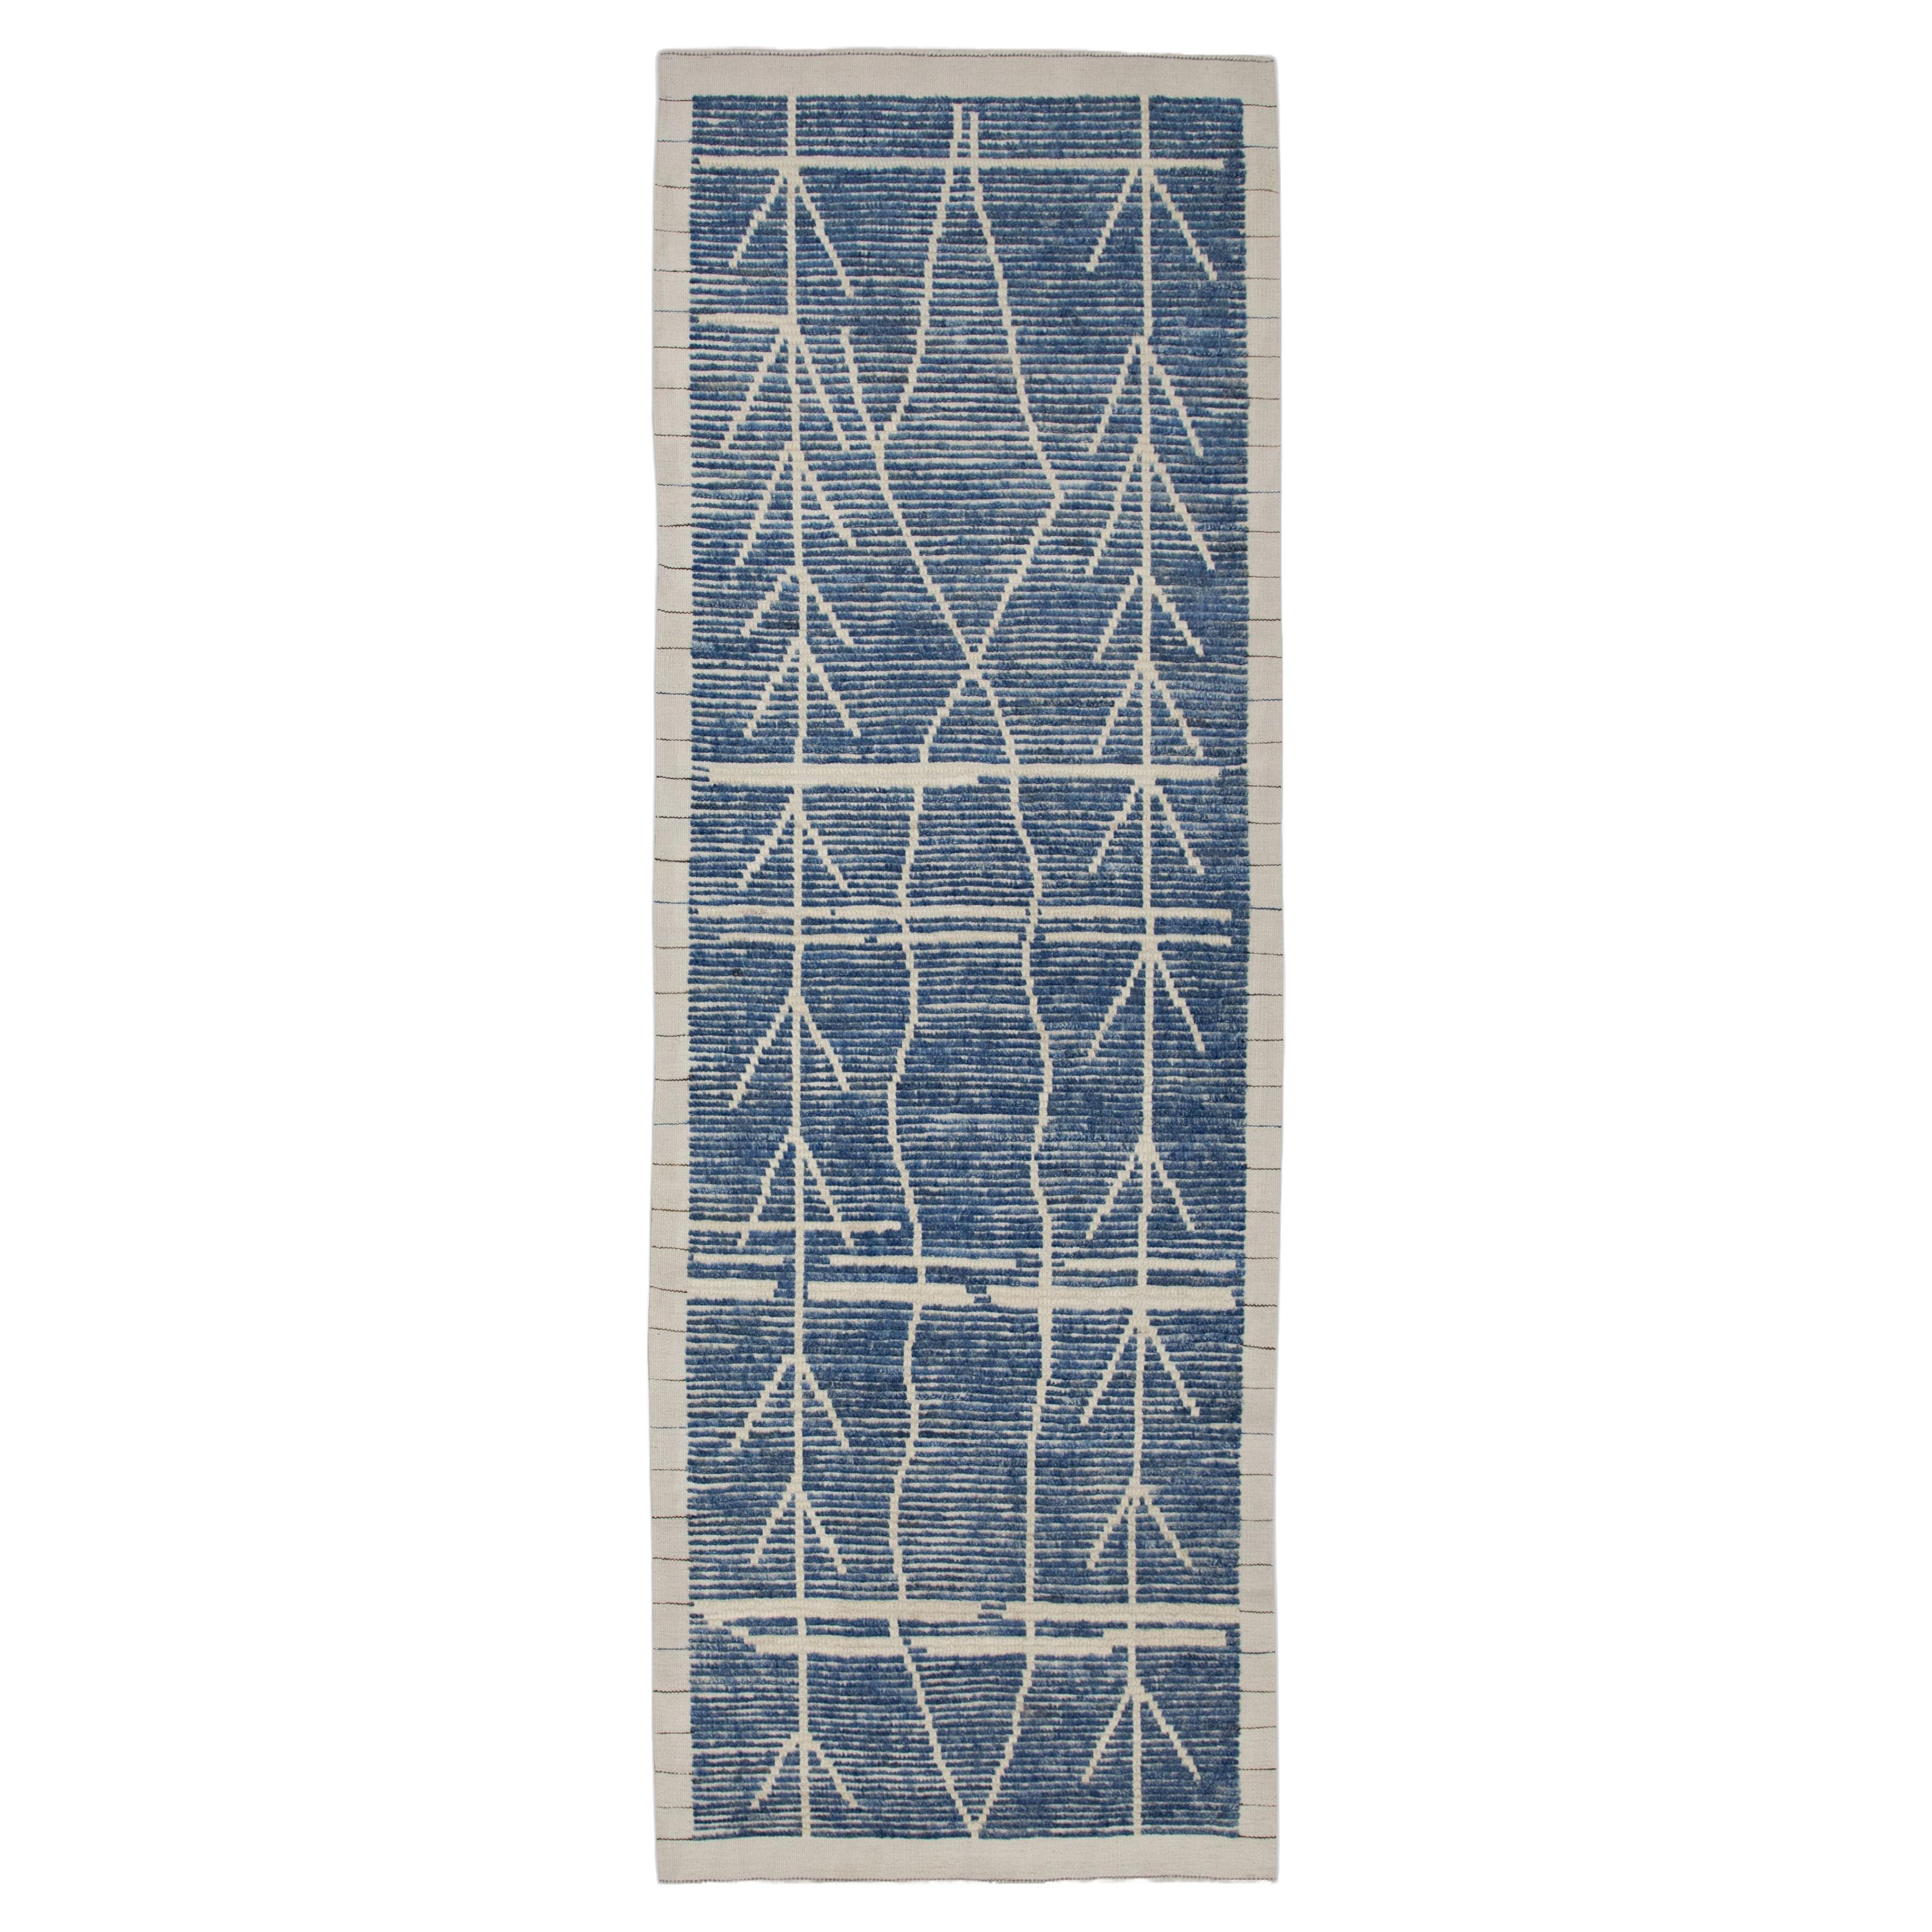  Handmade Wool Tulu Rug in Geometric Design 3'1" x 8'4"